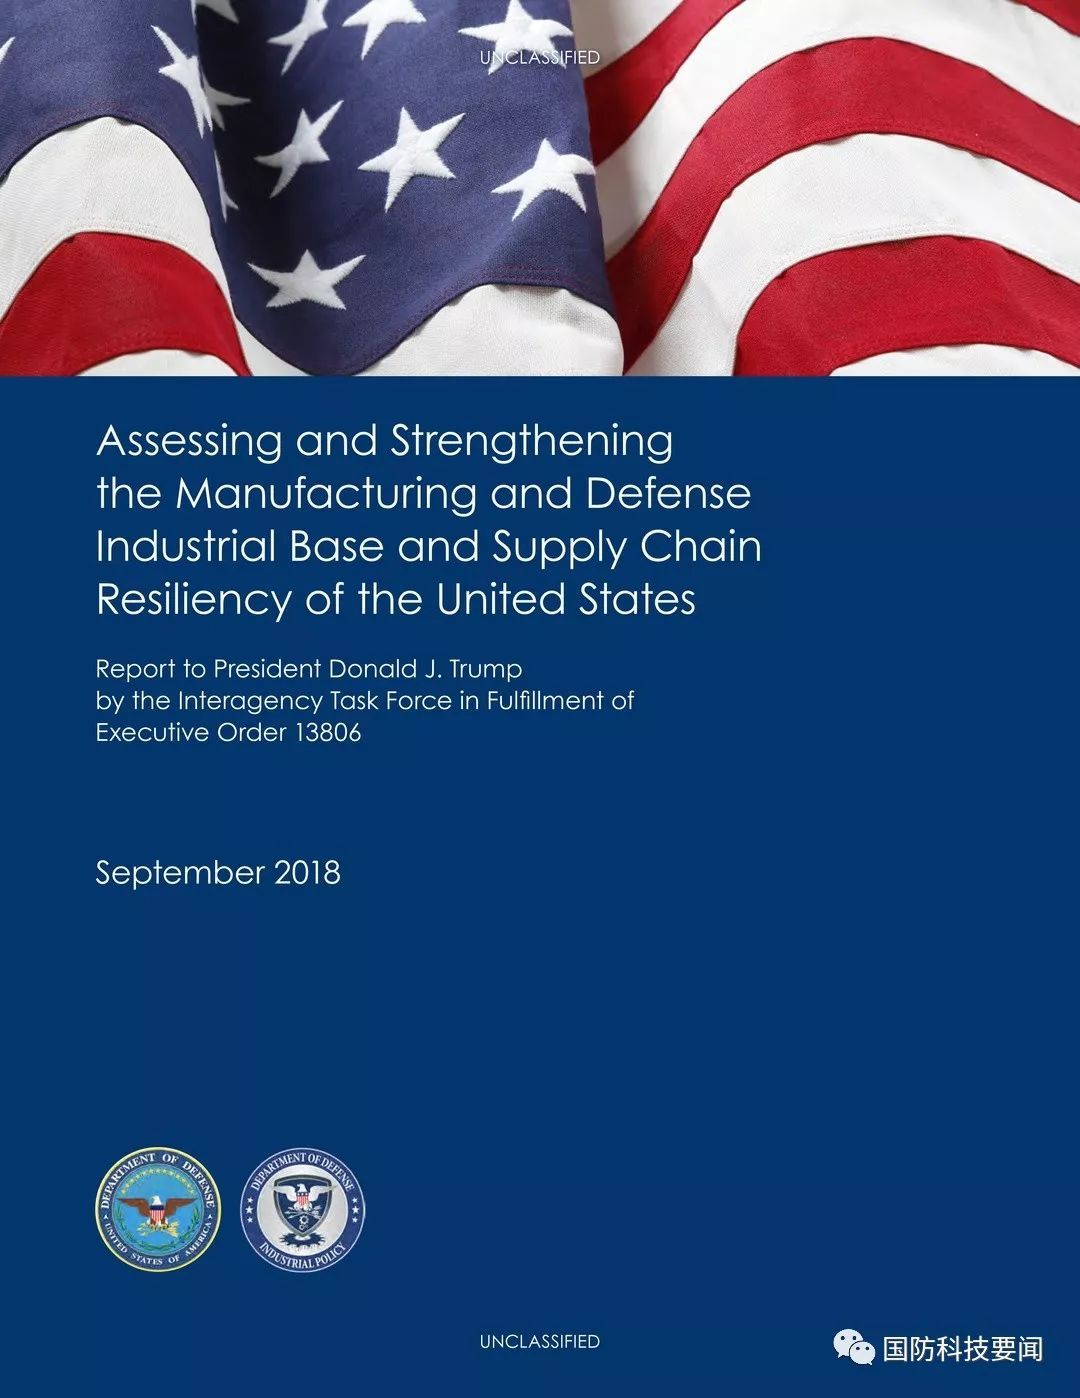 强化美国制造业和国防工业基础